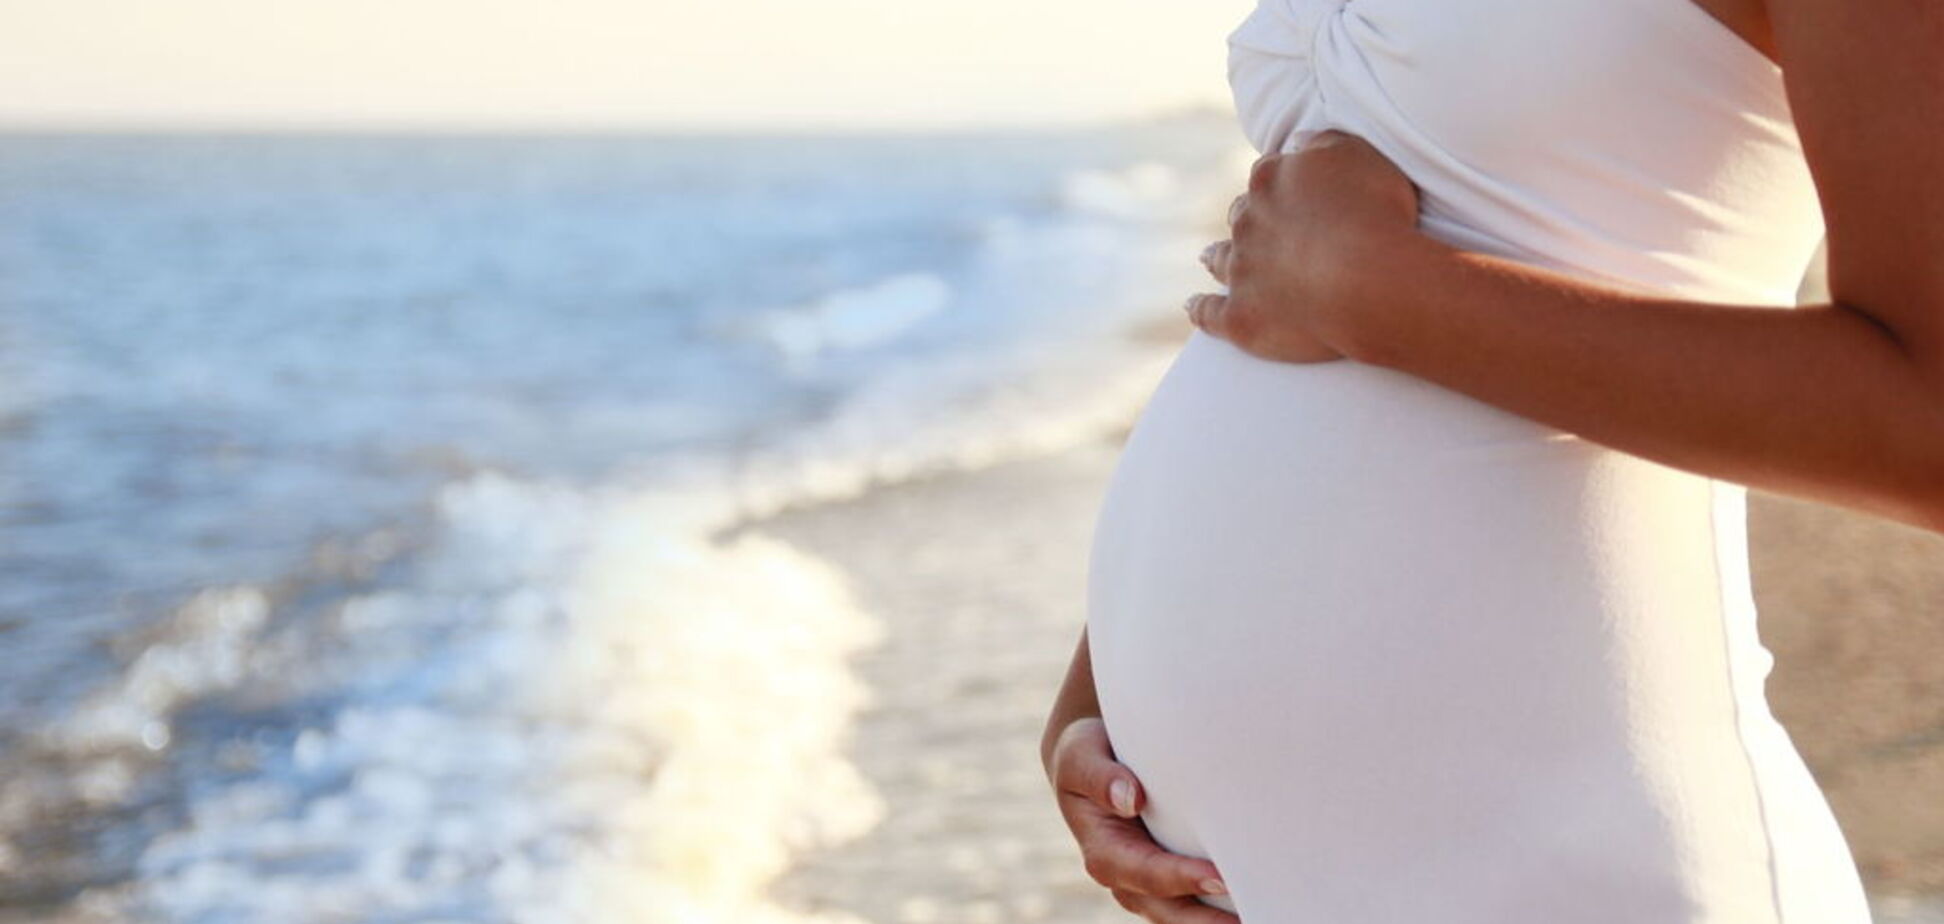 Женщина родила за месяц трех малышей: как аномалия превратилась в чудо